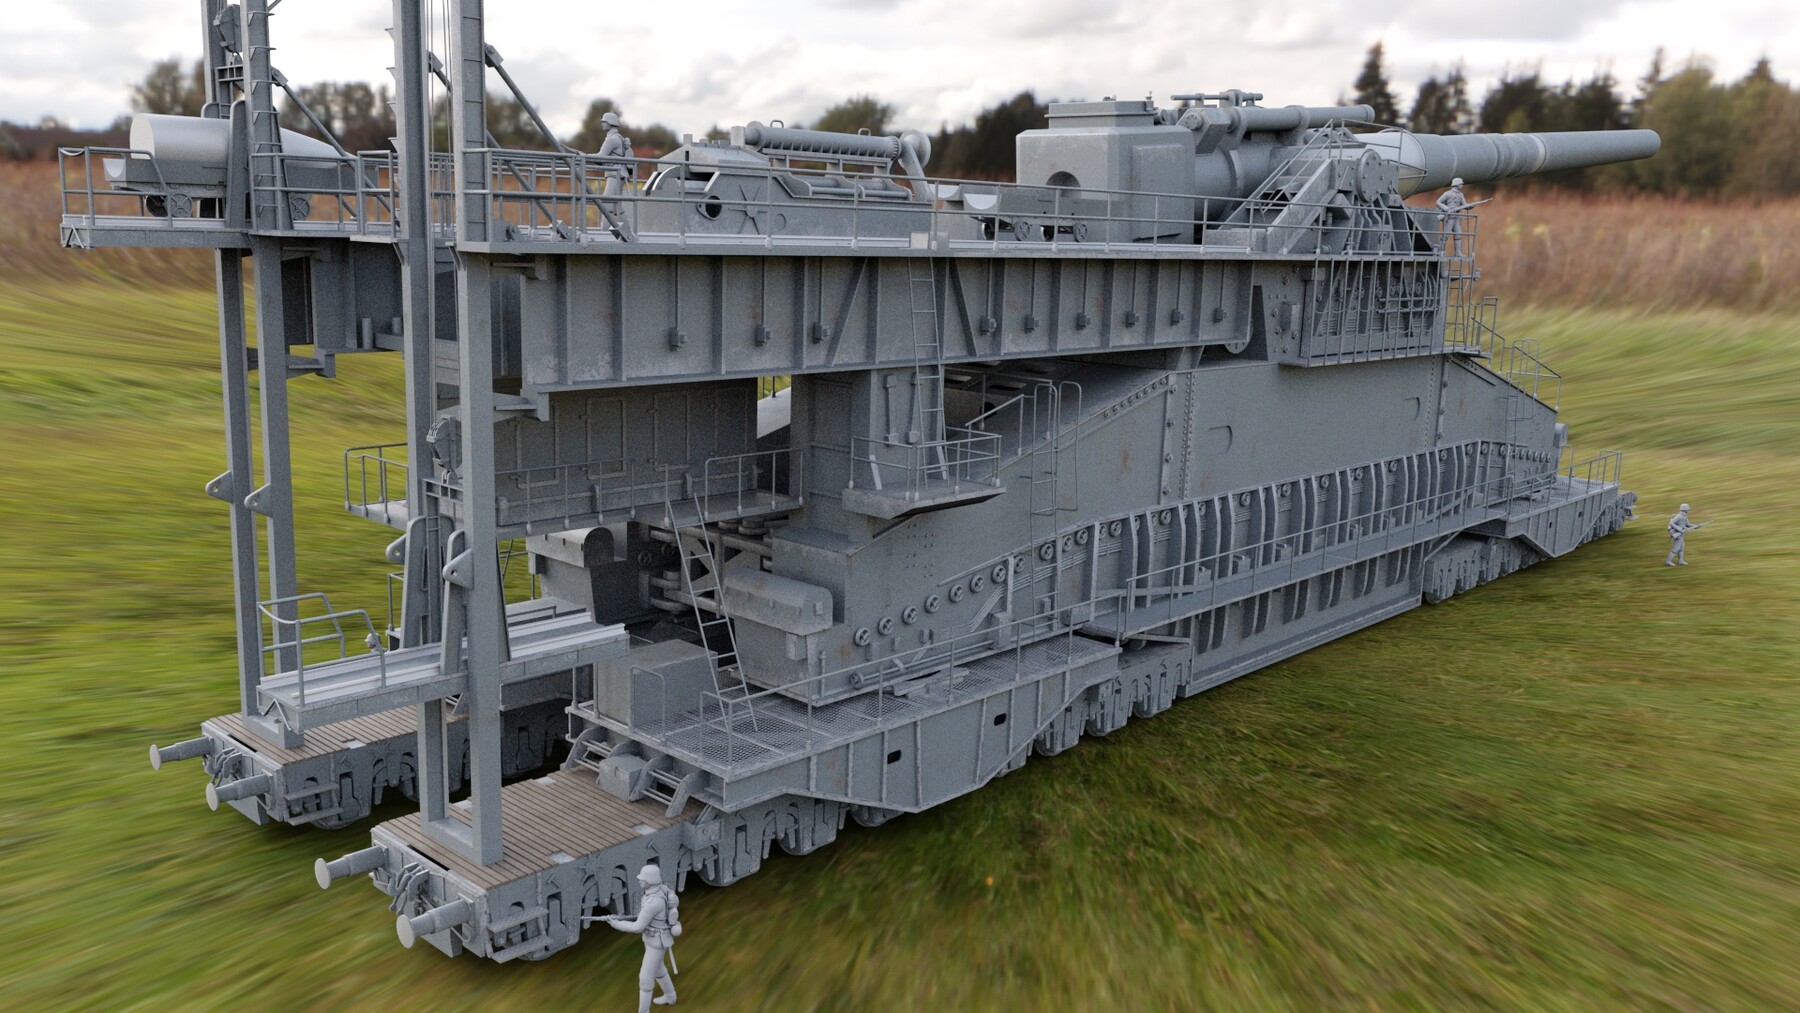 Schwerer Gustav artillery, 3D CAD Model Library